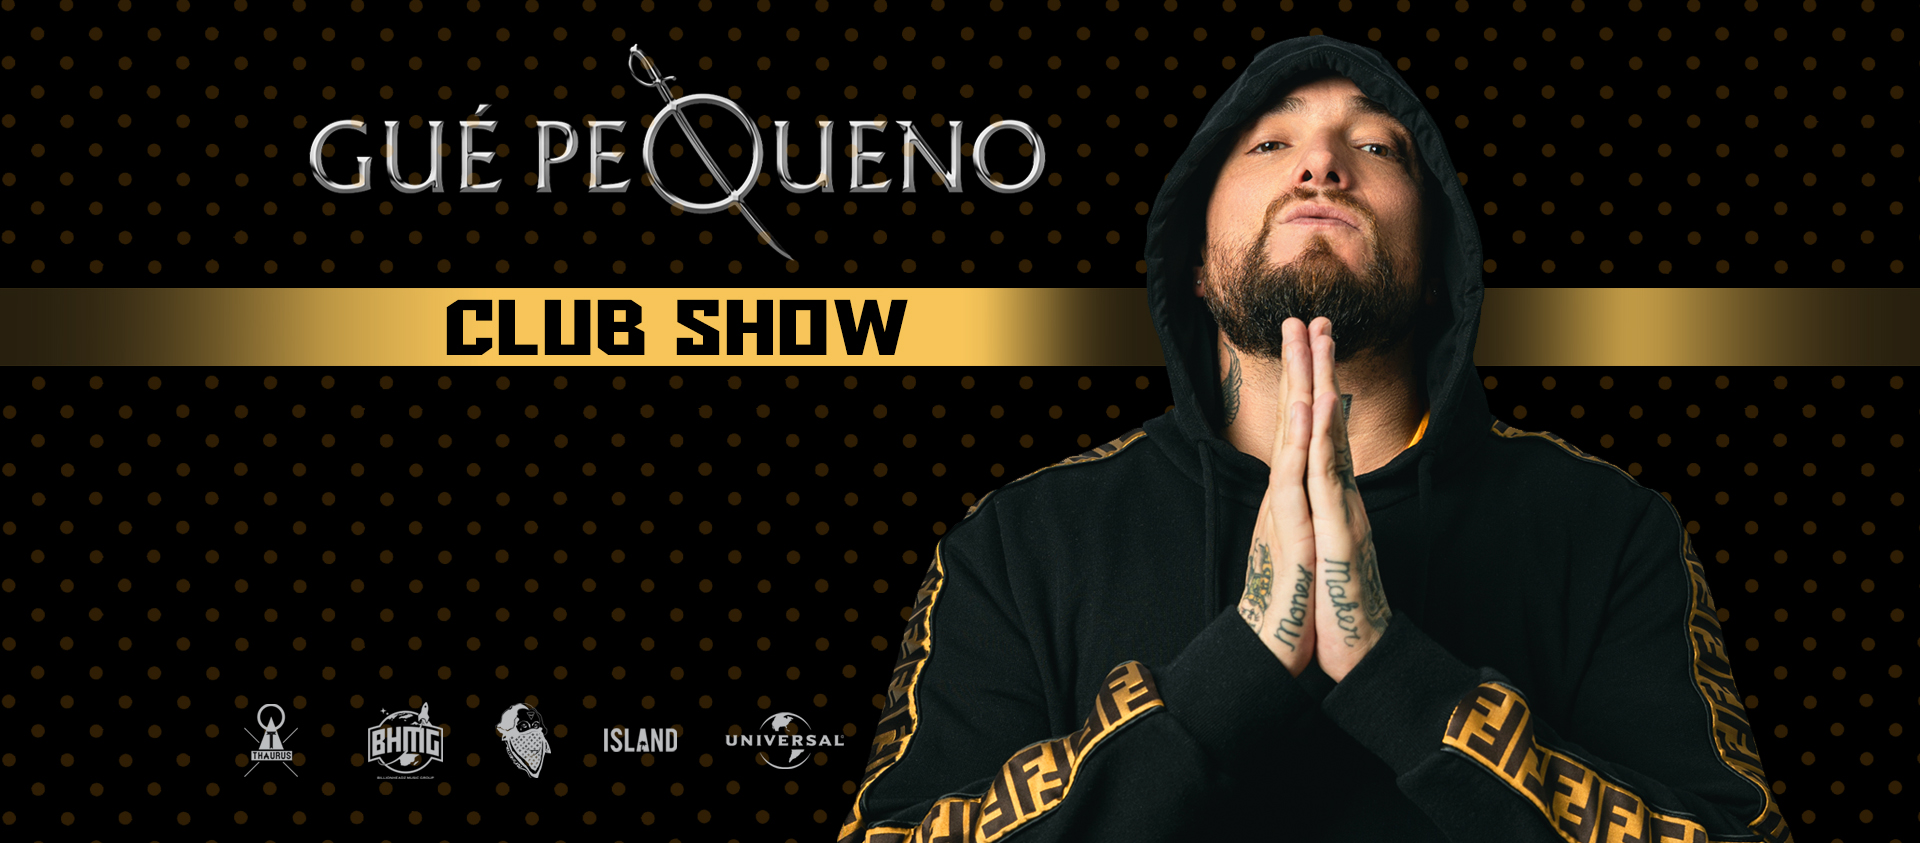 GUE PEQUENO - CLUB SHOW